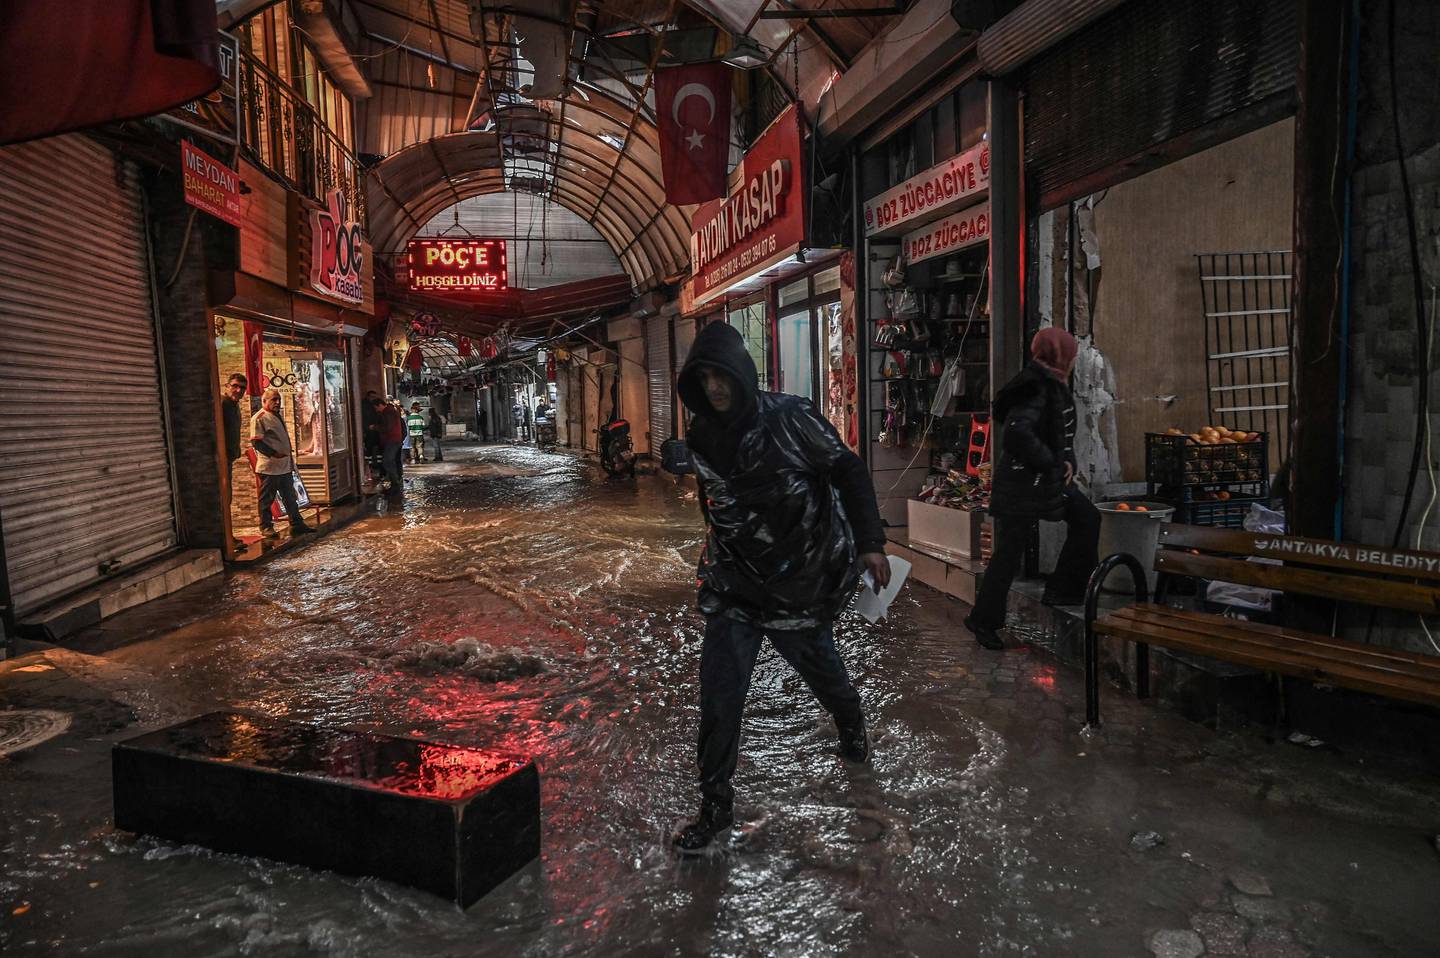 La gente intenta evitar las inundaciones en el bazar de Uzuncarsi después de las fuertes lluvias, once meses después de que un terremoto de magnitud 7,8 y sus réplicas arrasaran con amplias zonas del sudeste montañoso de Turquía, en Antakya. El doble terremoto, en medio de La noche del 6 de febrero de 2023 mató a más de 50.000 personas y arrasó franjas de ciudades enteras en todo el sureste de Turquía. Ningún lugar se vio más afectado que Antakya, una cuna de civilizaciones rodeada de montañas cerca de la frontera con Siria, donde se perdieron casi el 90 por ciento de los edificios. (Foto de Ozan KOSE / AFP)